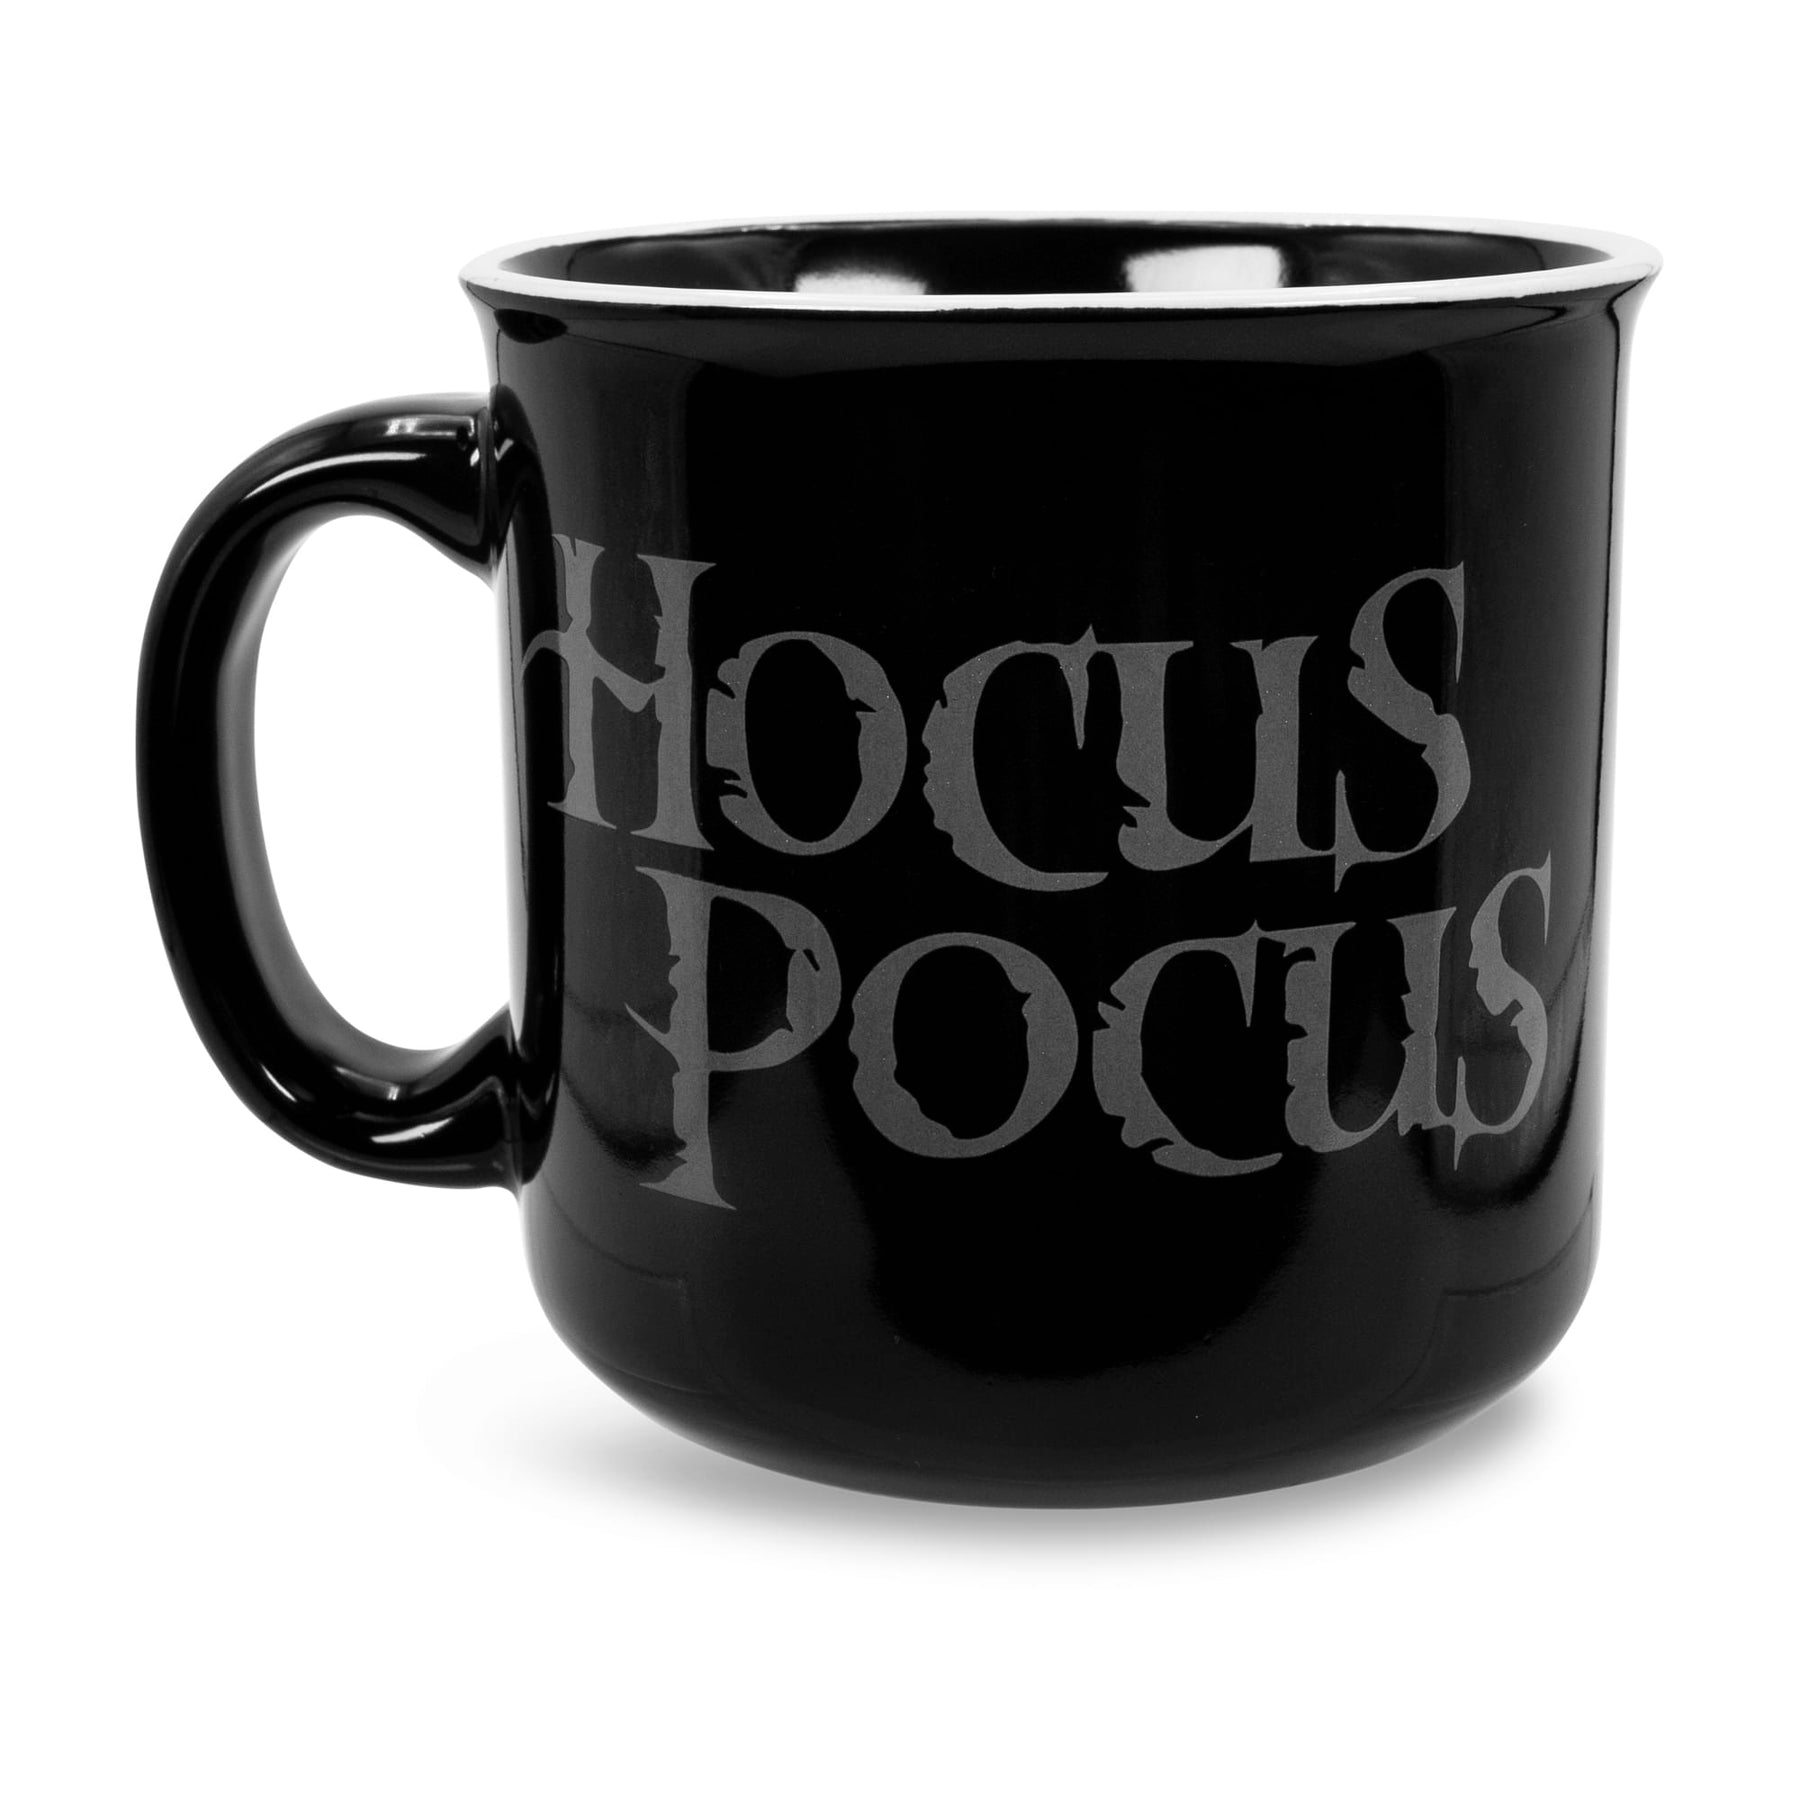 Disney Hocus Pocus Sanderson Museum Ceramic Camper Mug | Holds 20 Ounces